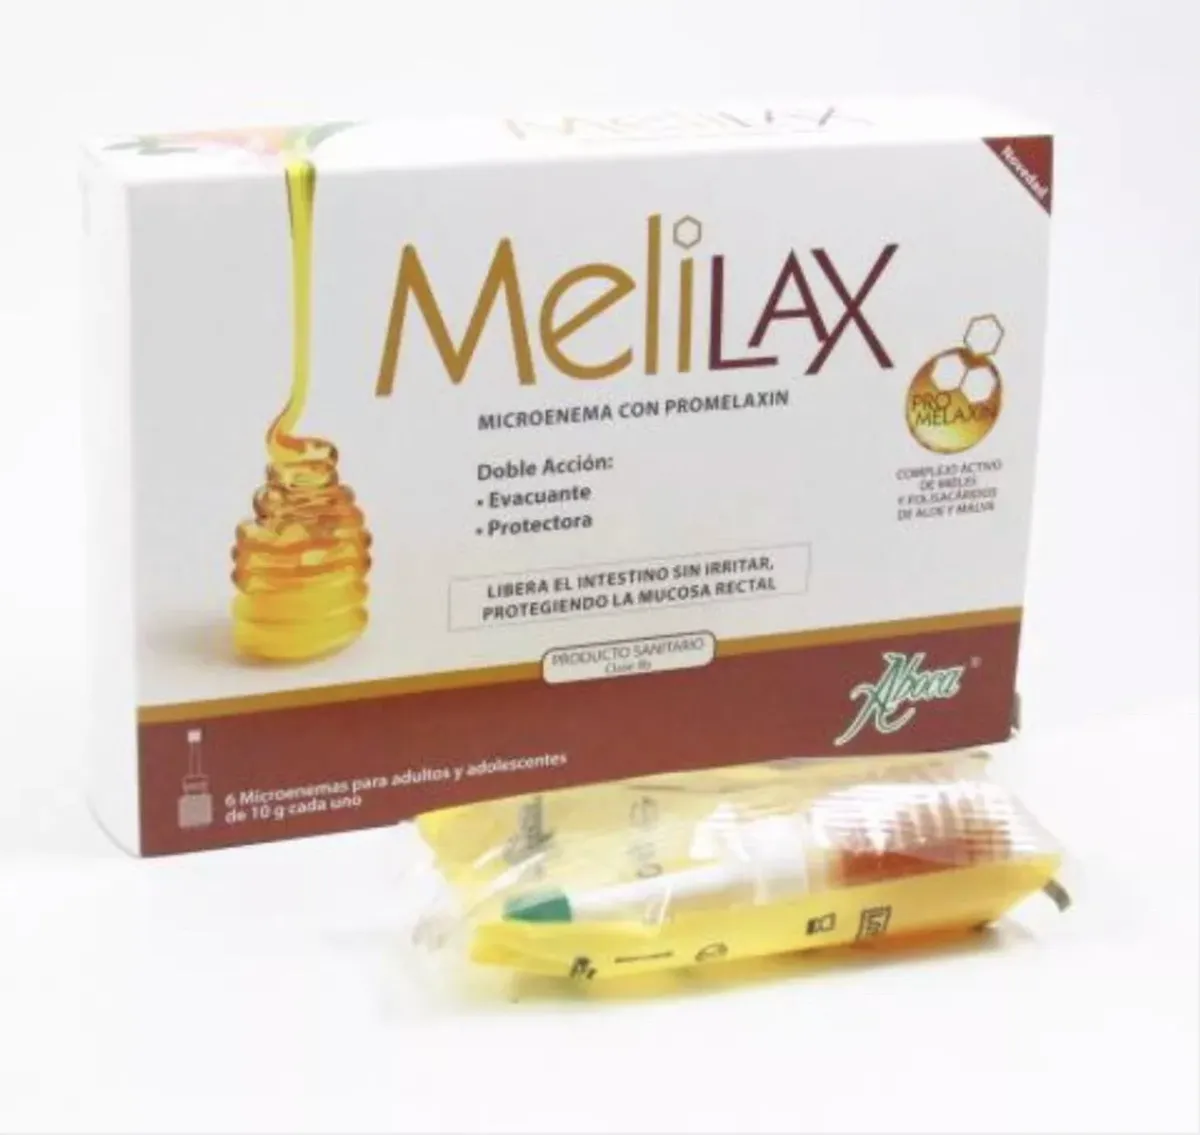 Aboca Melilax lavement au miel Adulte canules - Constipation, transit